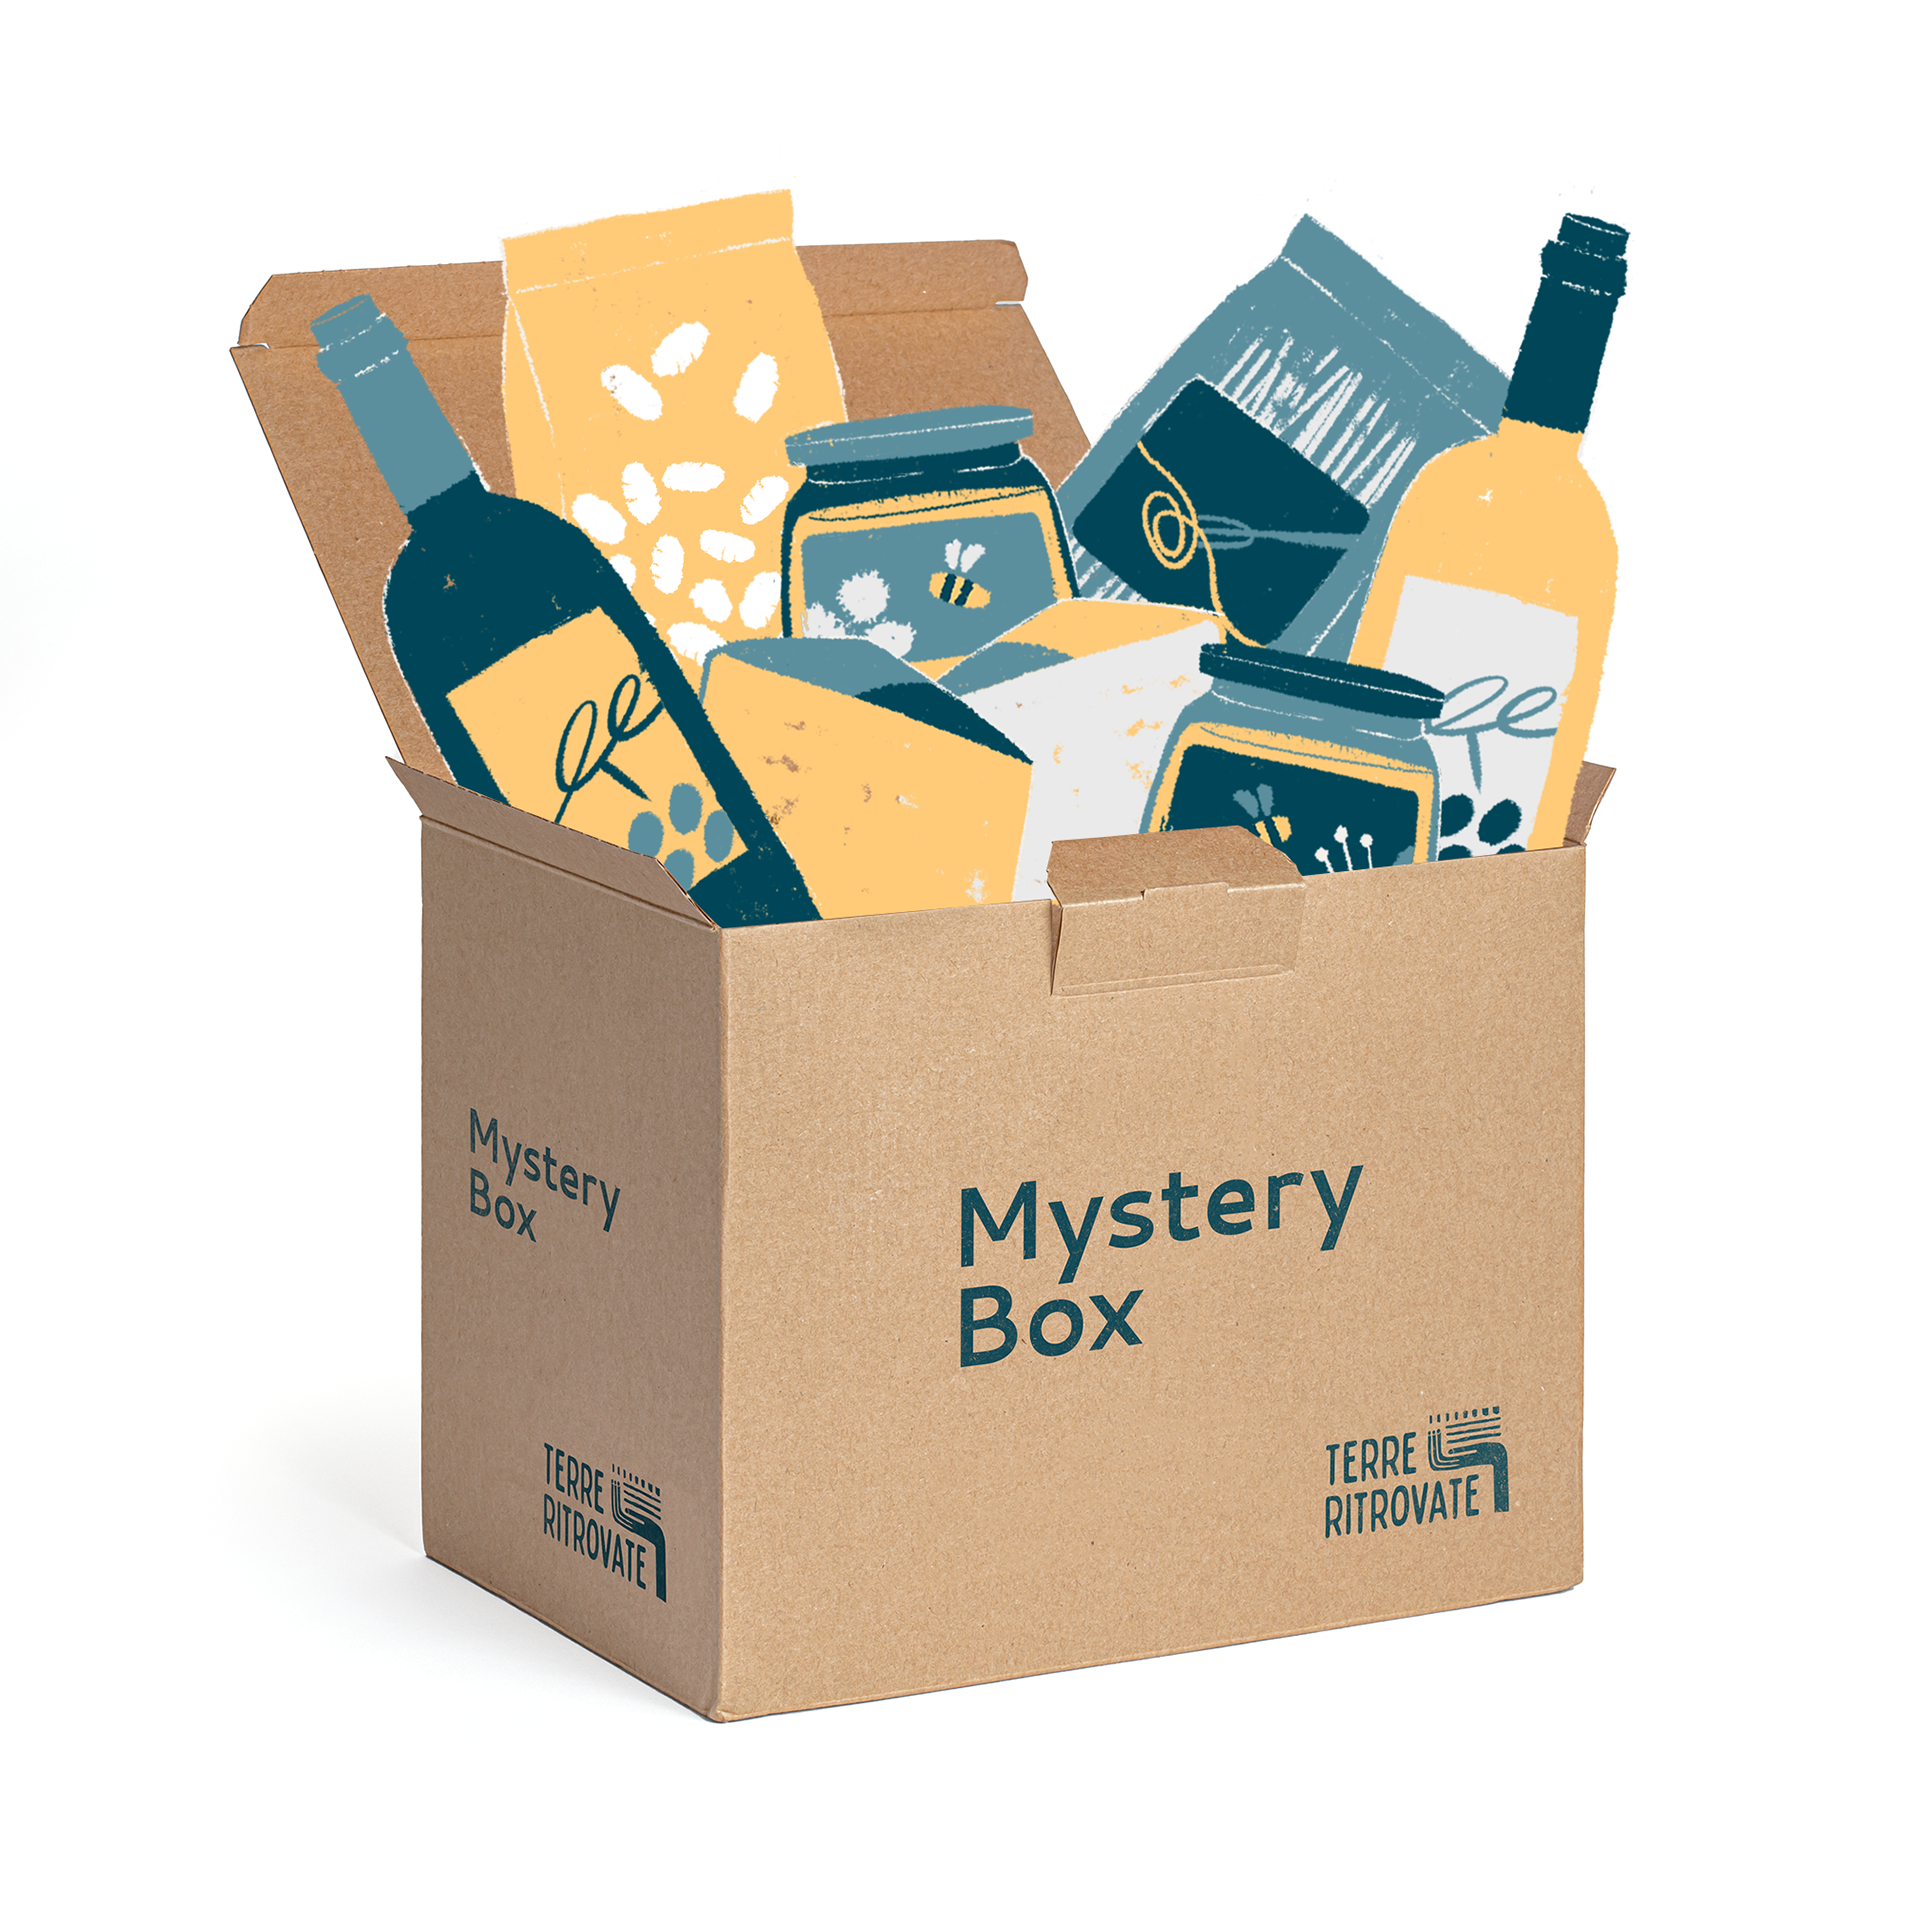 Mystery Box – Terre Ritrovate